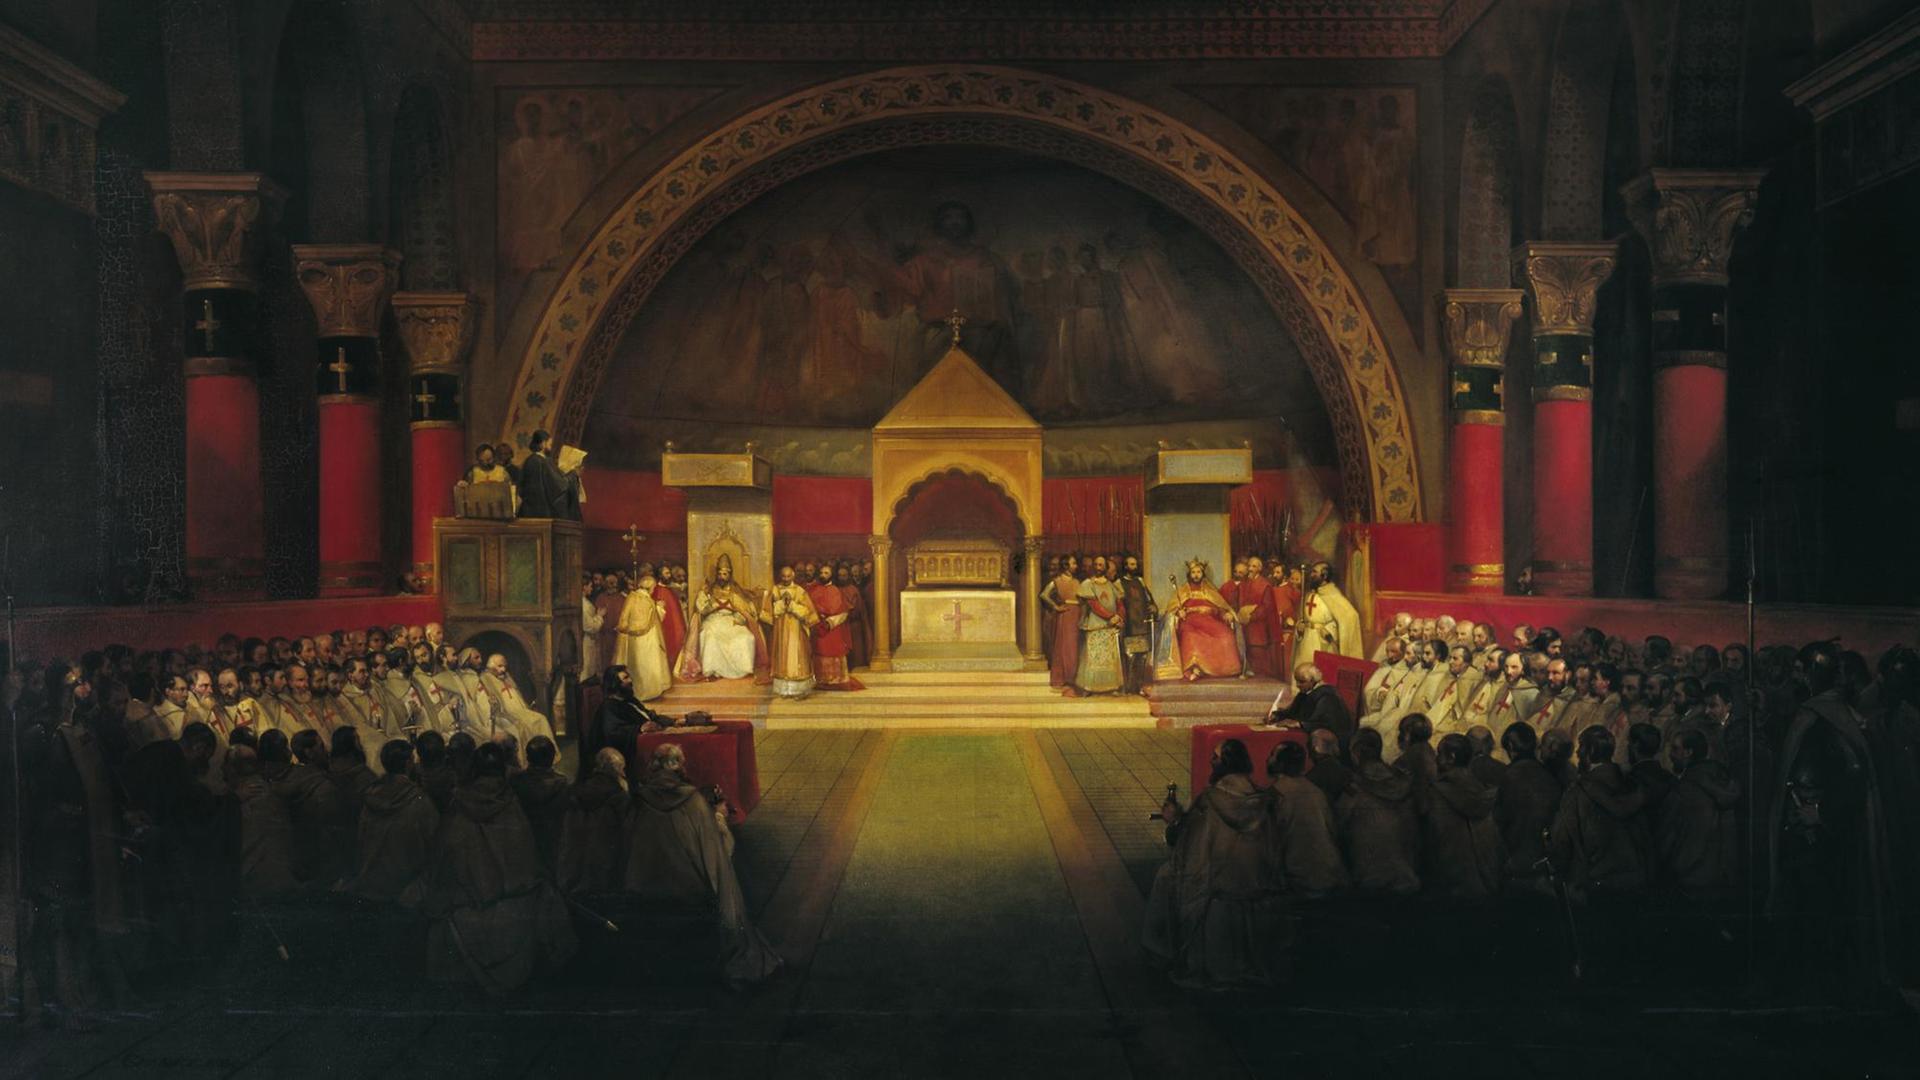 Gemälde der Kapitelversammlung derTempler. Ein sakraler Raum ist gefüllt mit Menschen. Auf dem Altar stehen verschiedene Personen in Ordenskleidung.